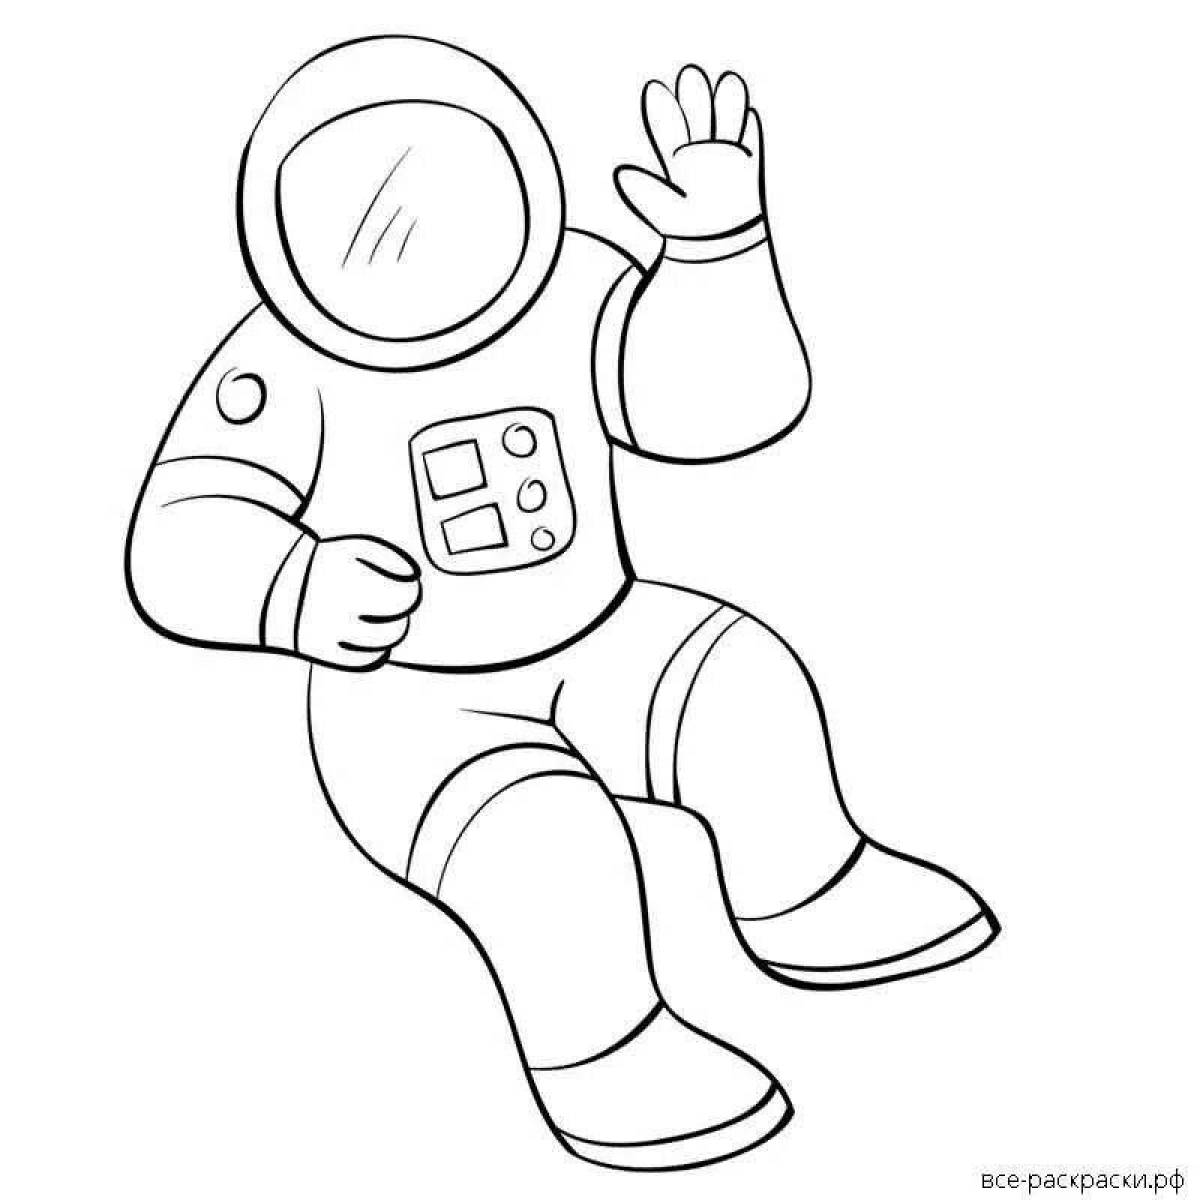 Как нарисовать скафандр. Космонавт раскраска для детей. Космонавт раскраска для малышей. Космонавт для раскрашивания для детей. Раскраска Космонавта в скафандре для детей.